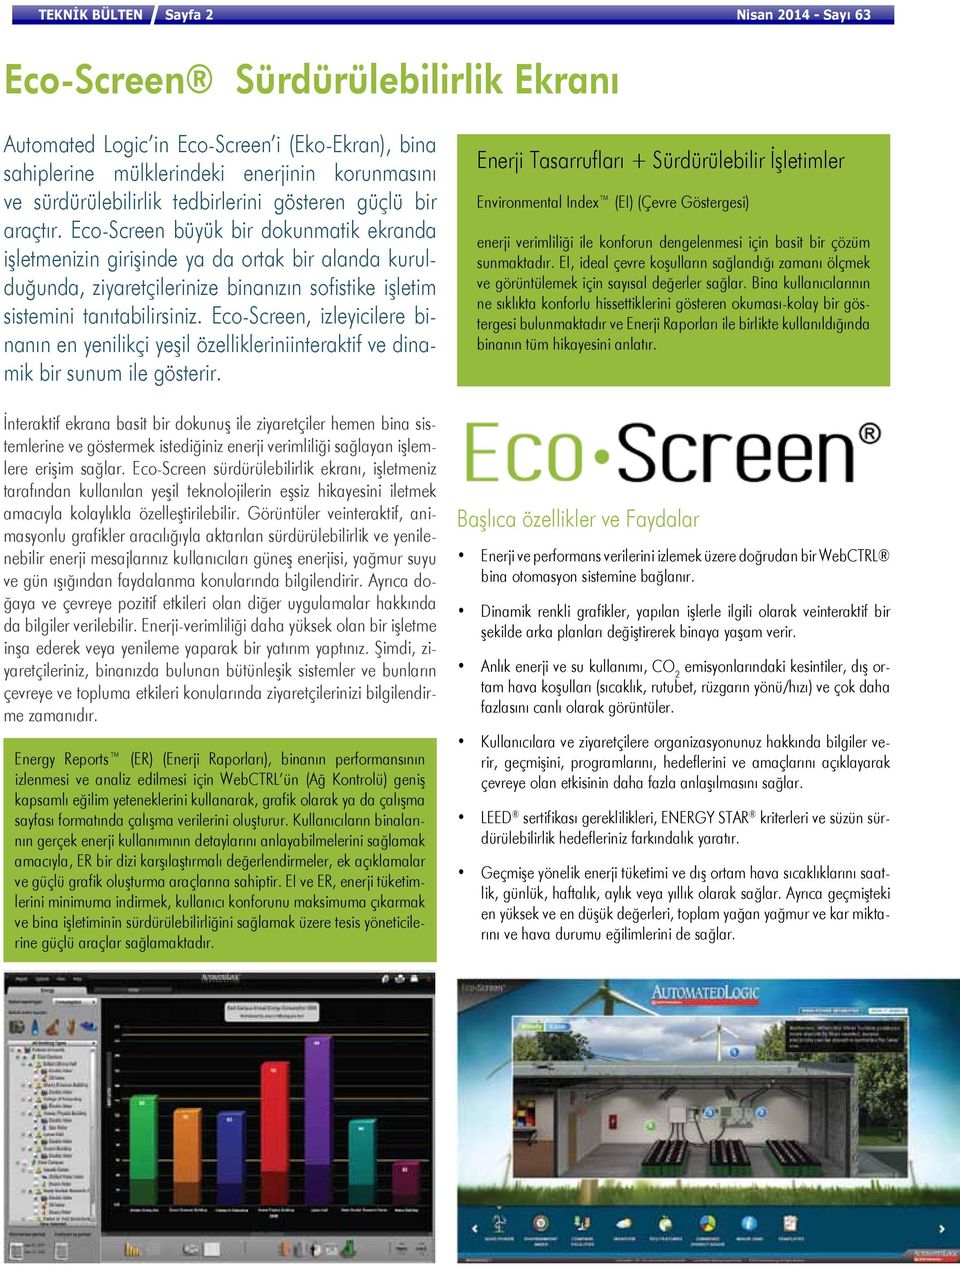 Eco-Screen büyük bir dokunmatik ekranda işletmenizin girişinde ya da ortak bir alanda kurulduğunda, ziyaretçilerinize binanızın sofistike işletim sistemini tanıtabilirsiniz.